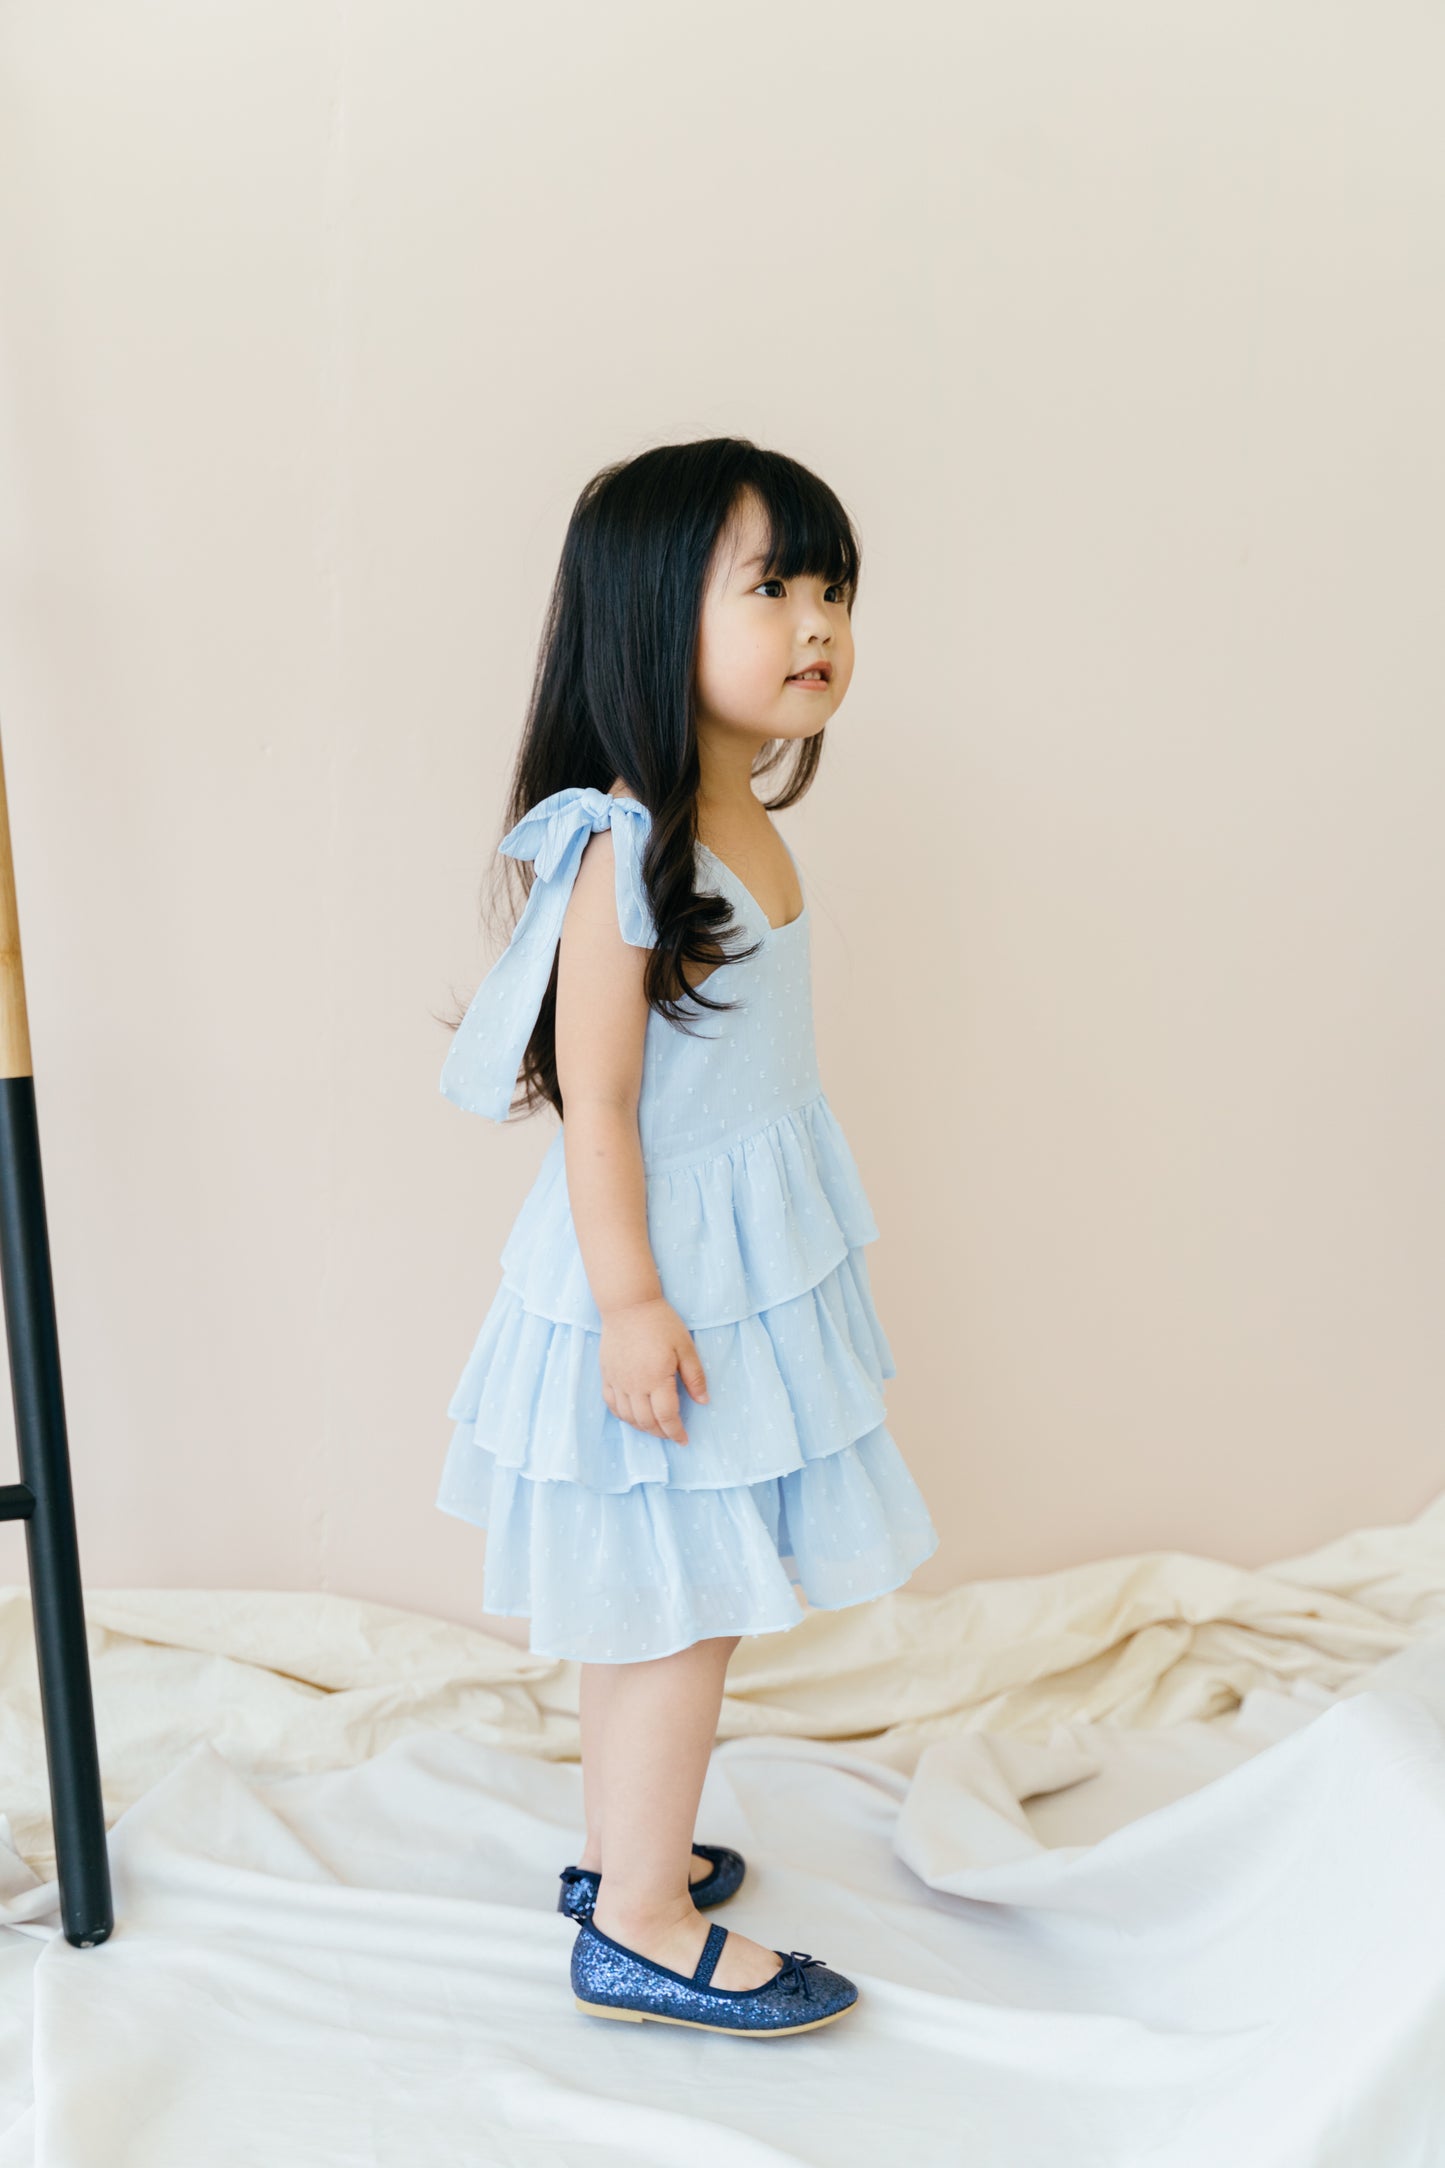 Mini Kyra Dress in Powder Blue